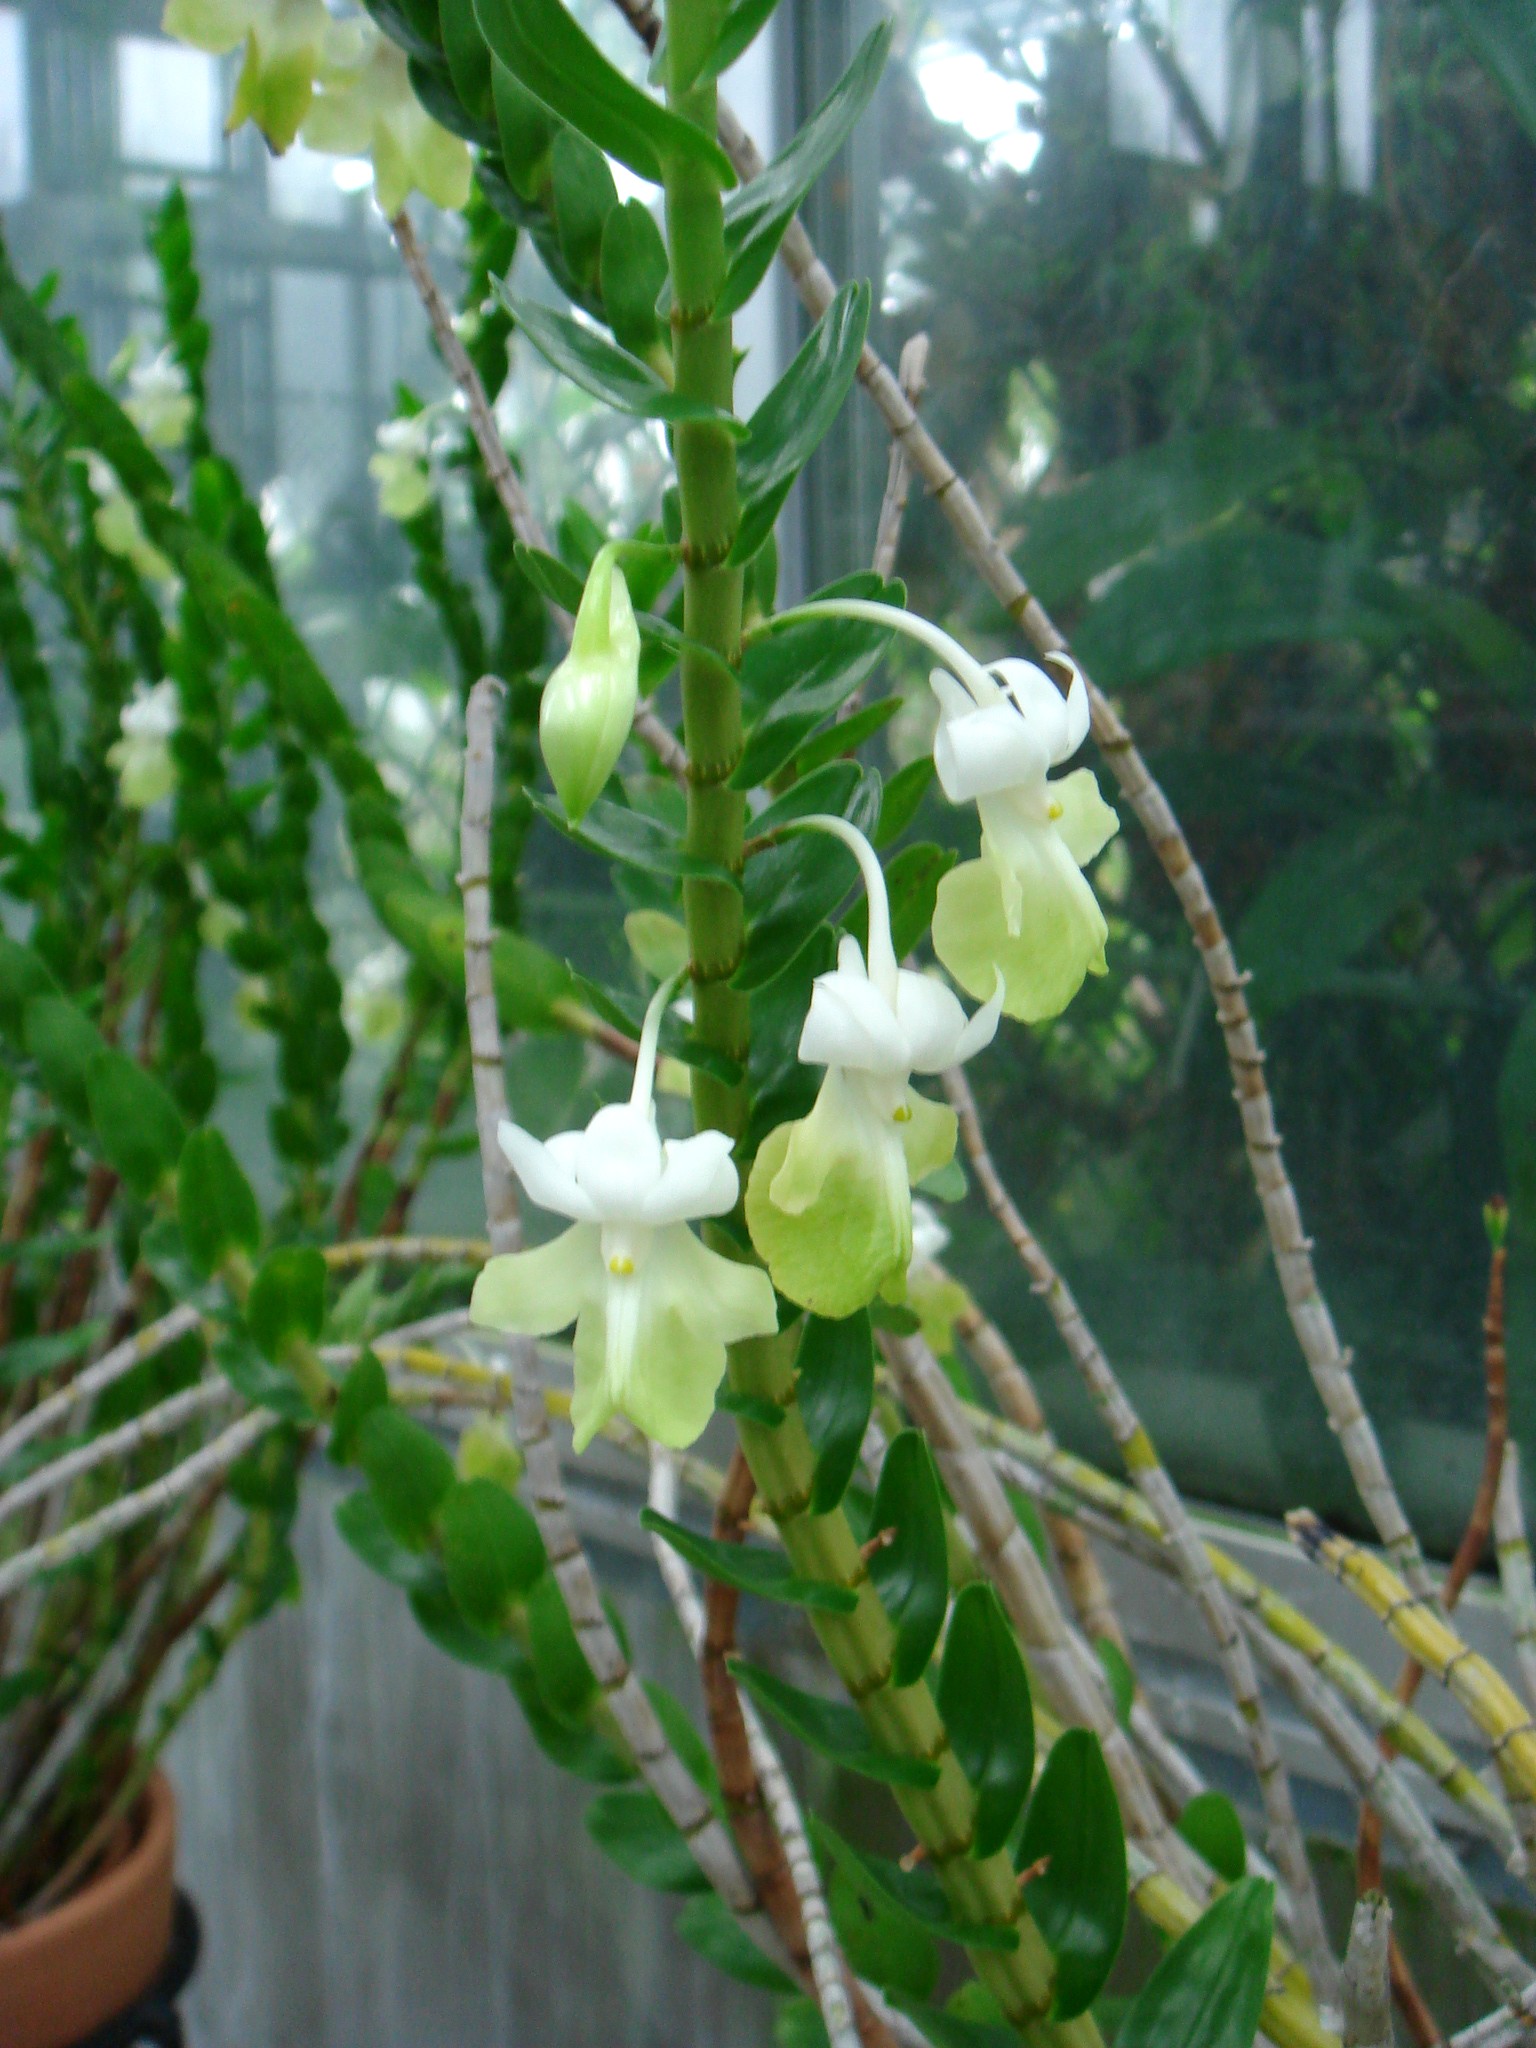 http://orchids.la.coocan.jp/Dendrobium/Dendrobium%20uniflorum/DSC04379.JPG